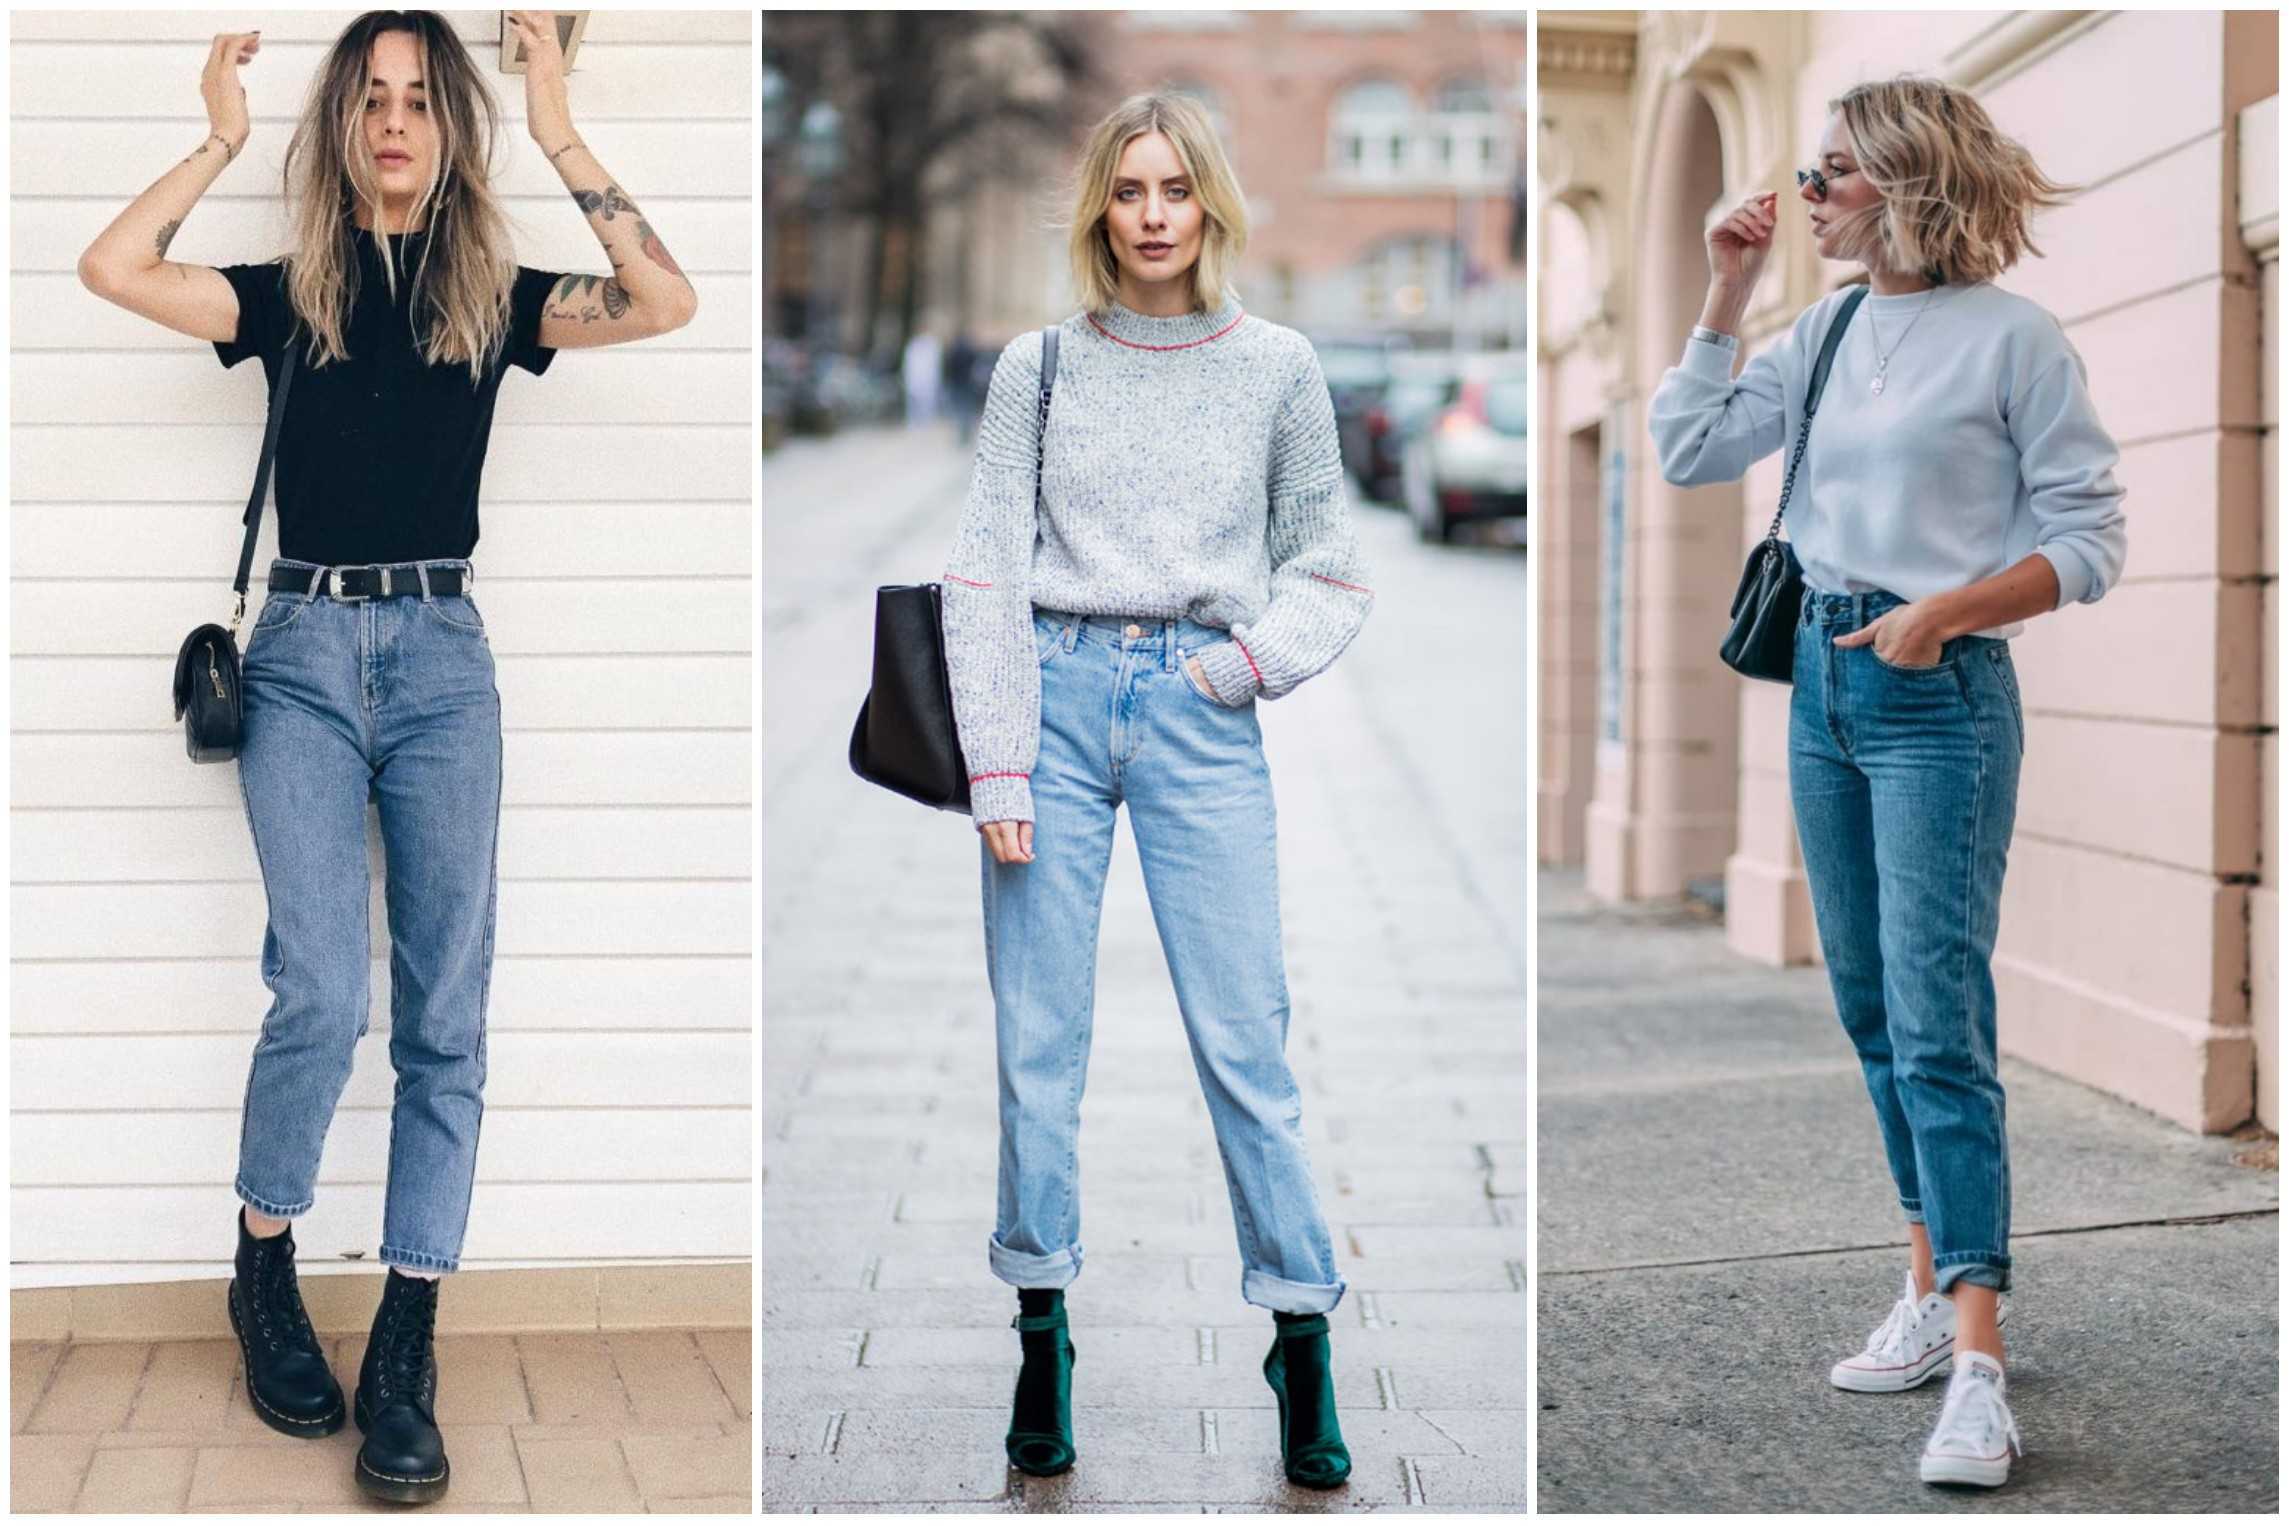 C чем носить джинсы американки и как выбрать модель по фигуре?